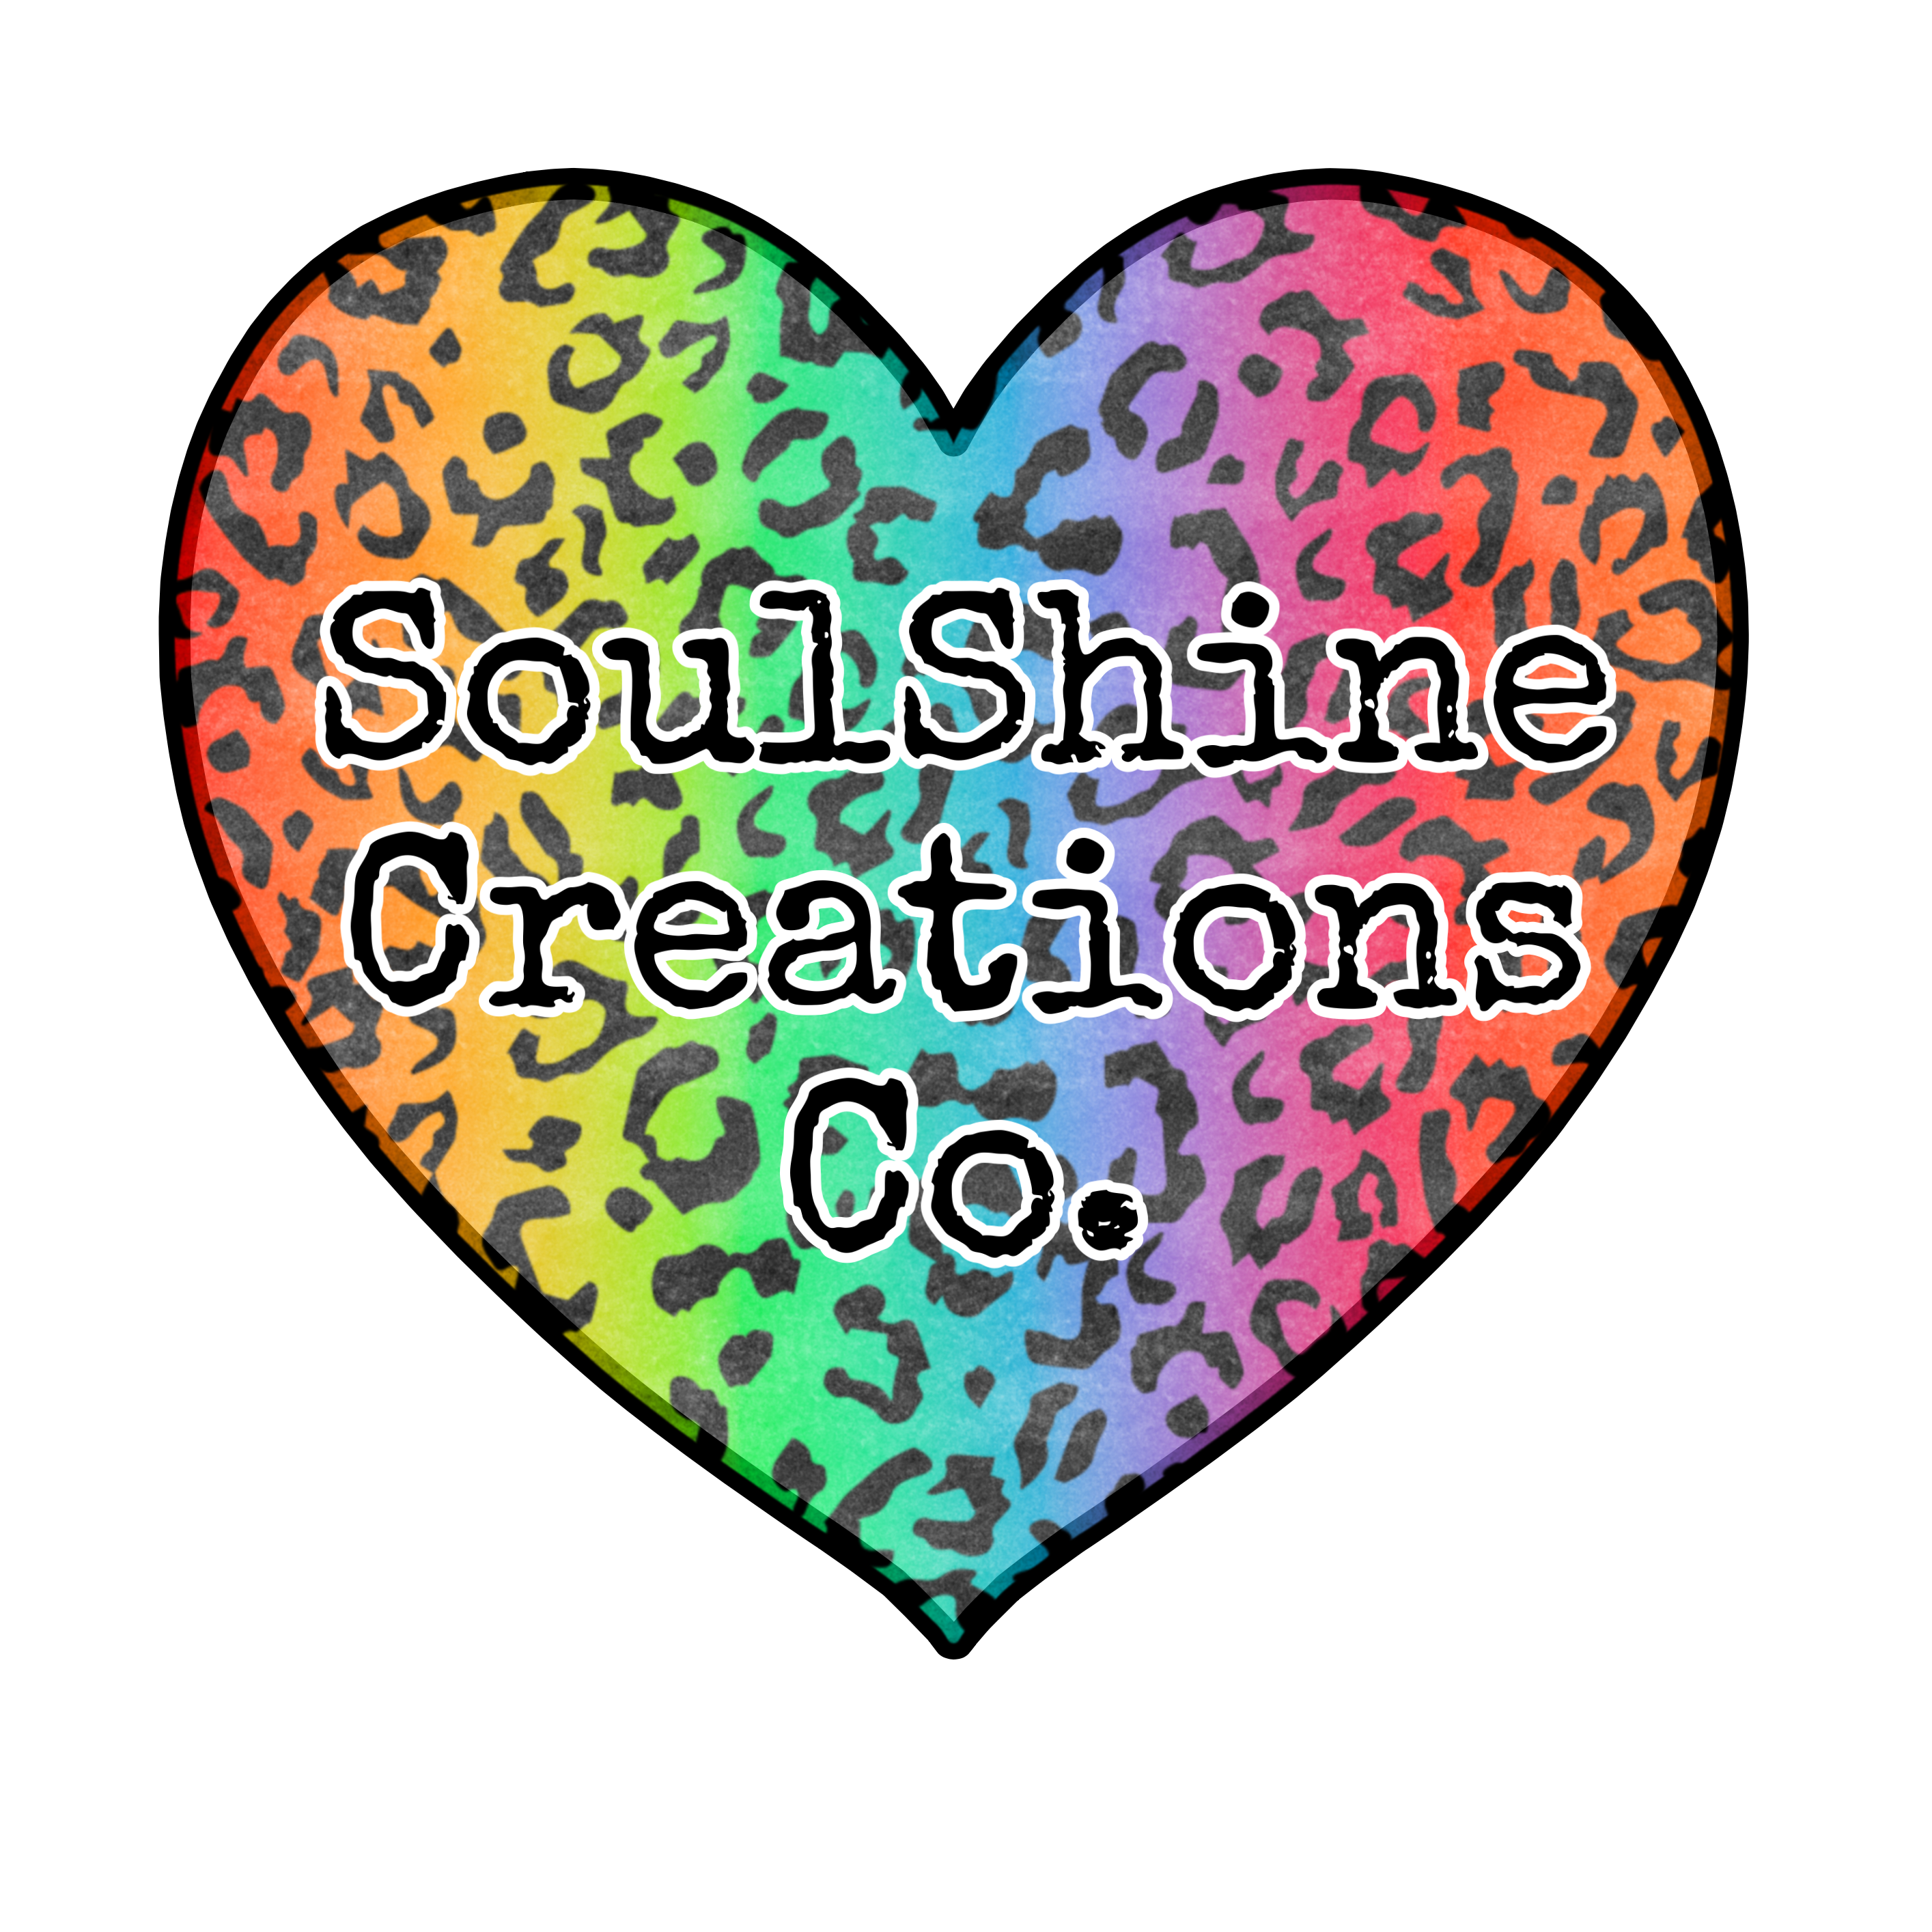 Soulshine Creations Co.